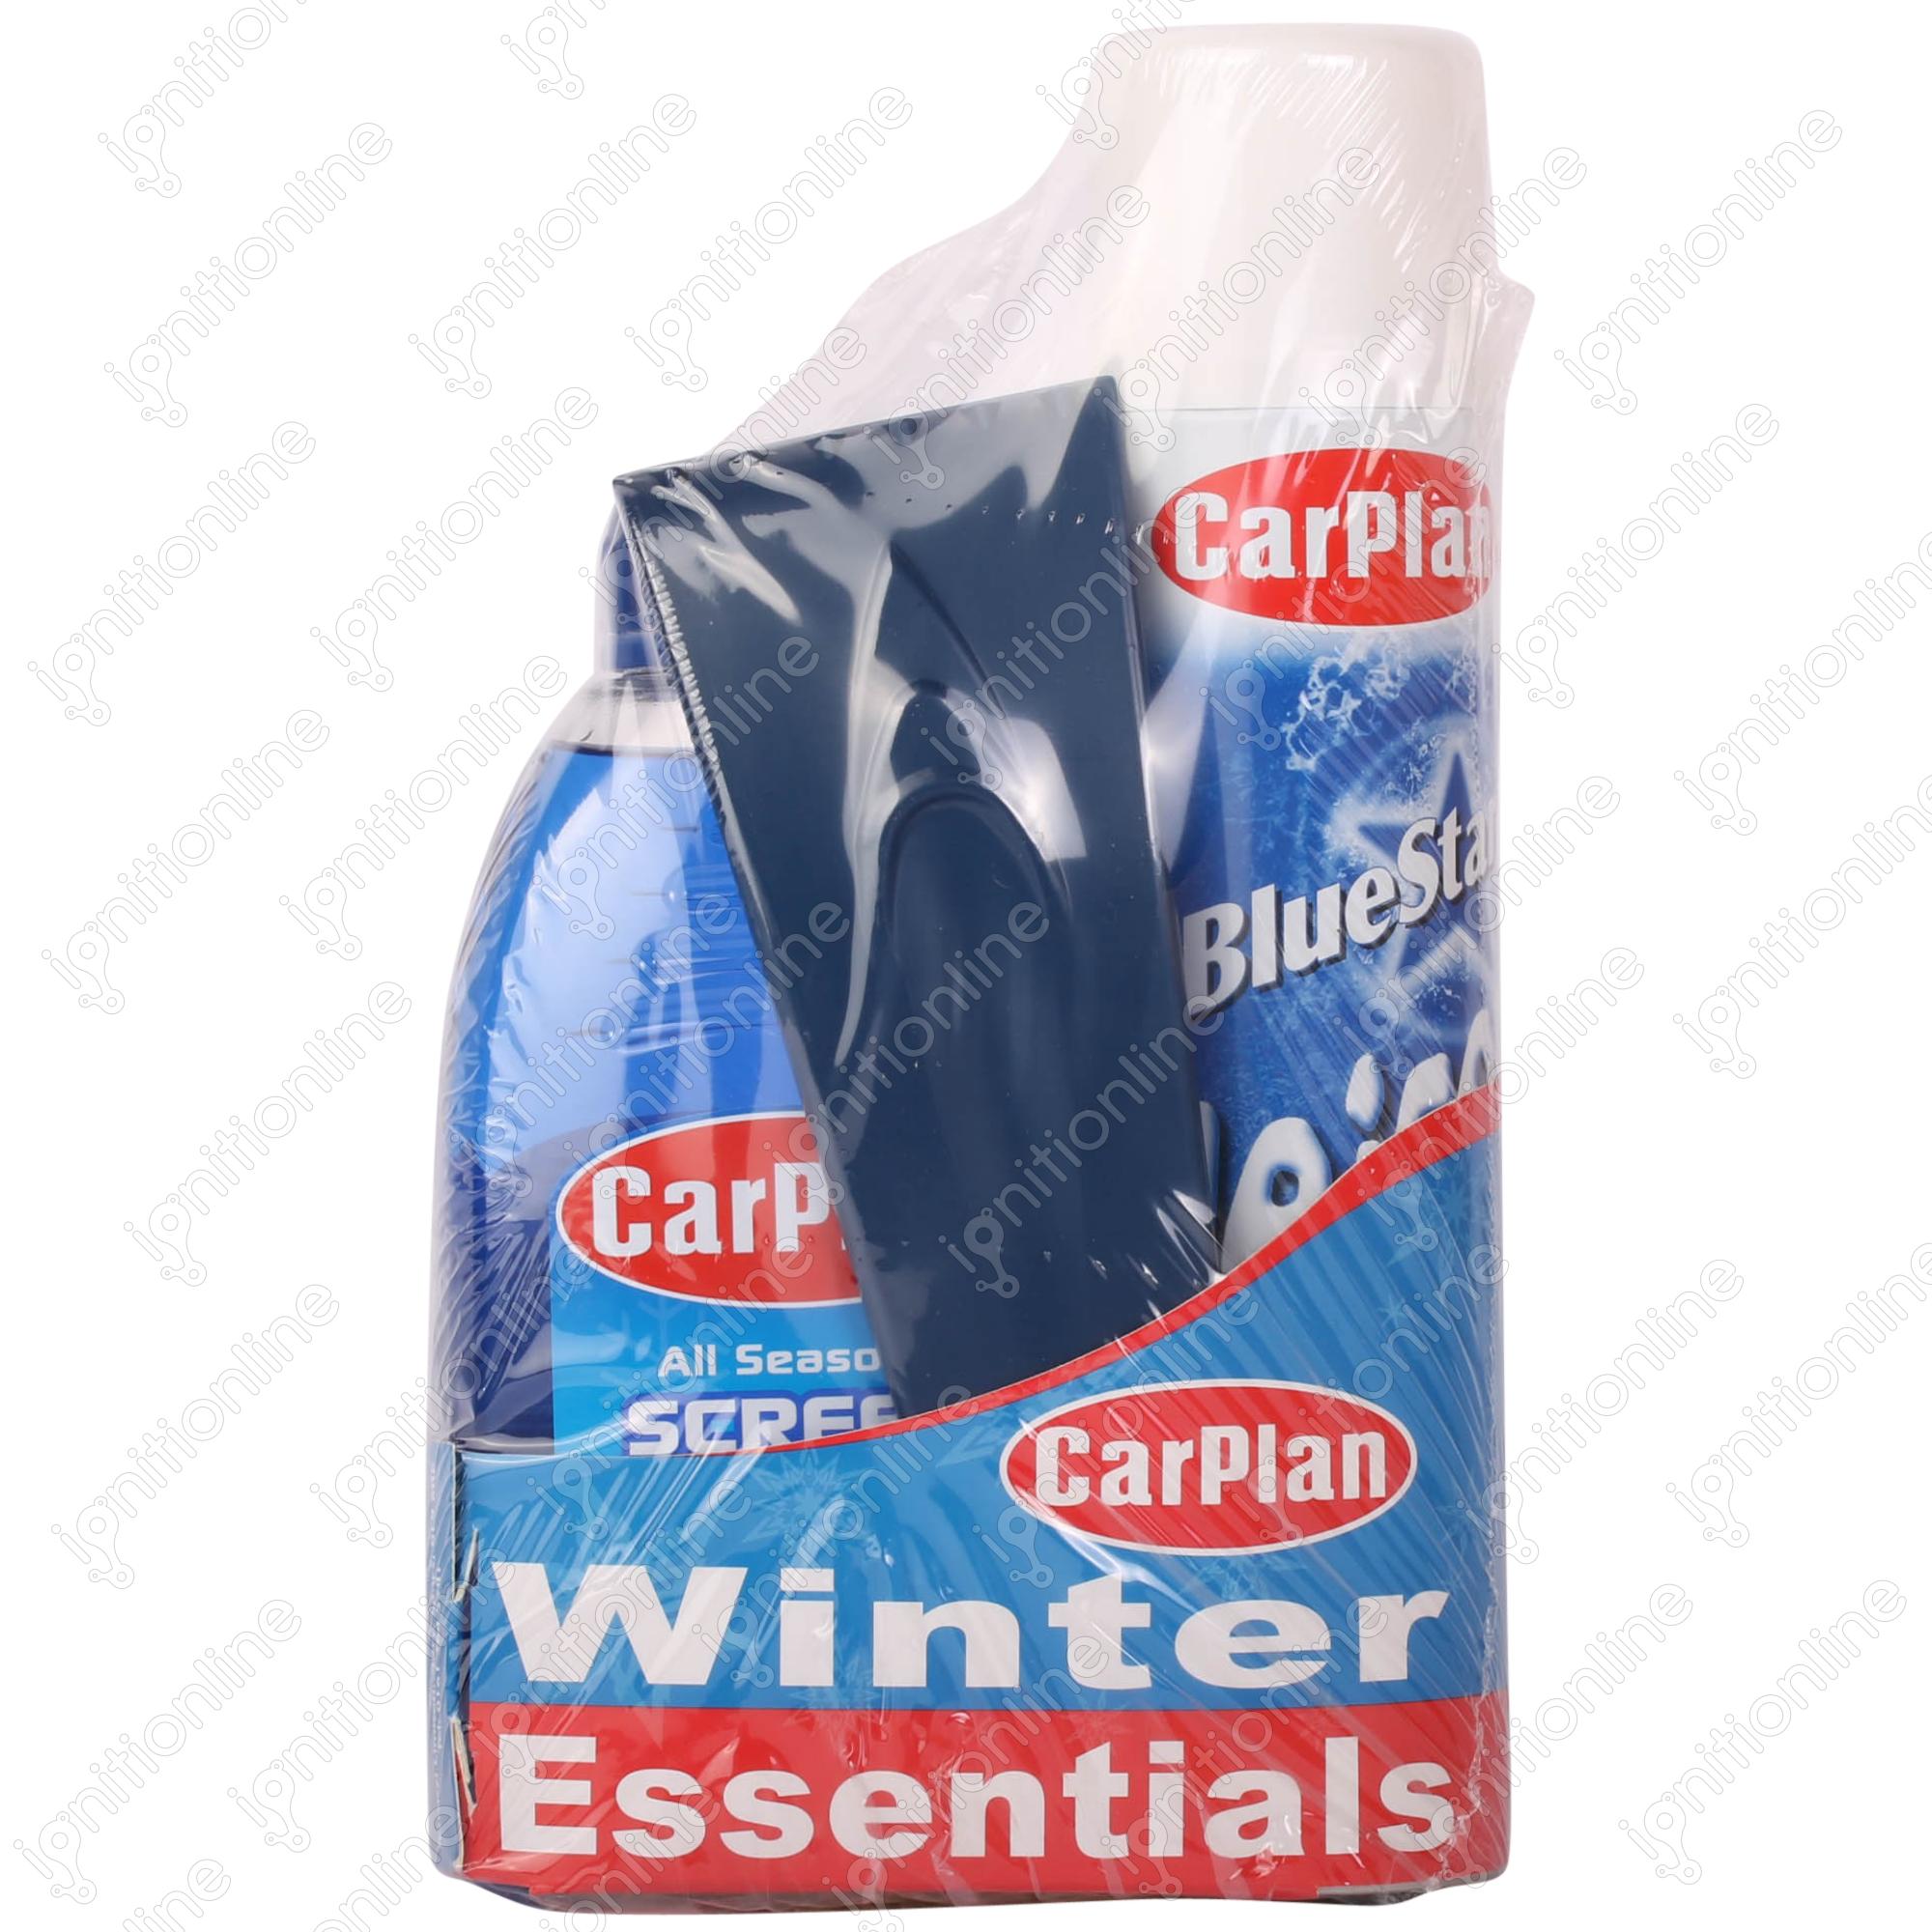 CarPlan Winter Essentials Gift Pack